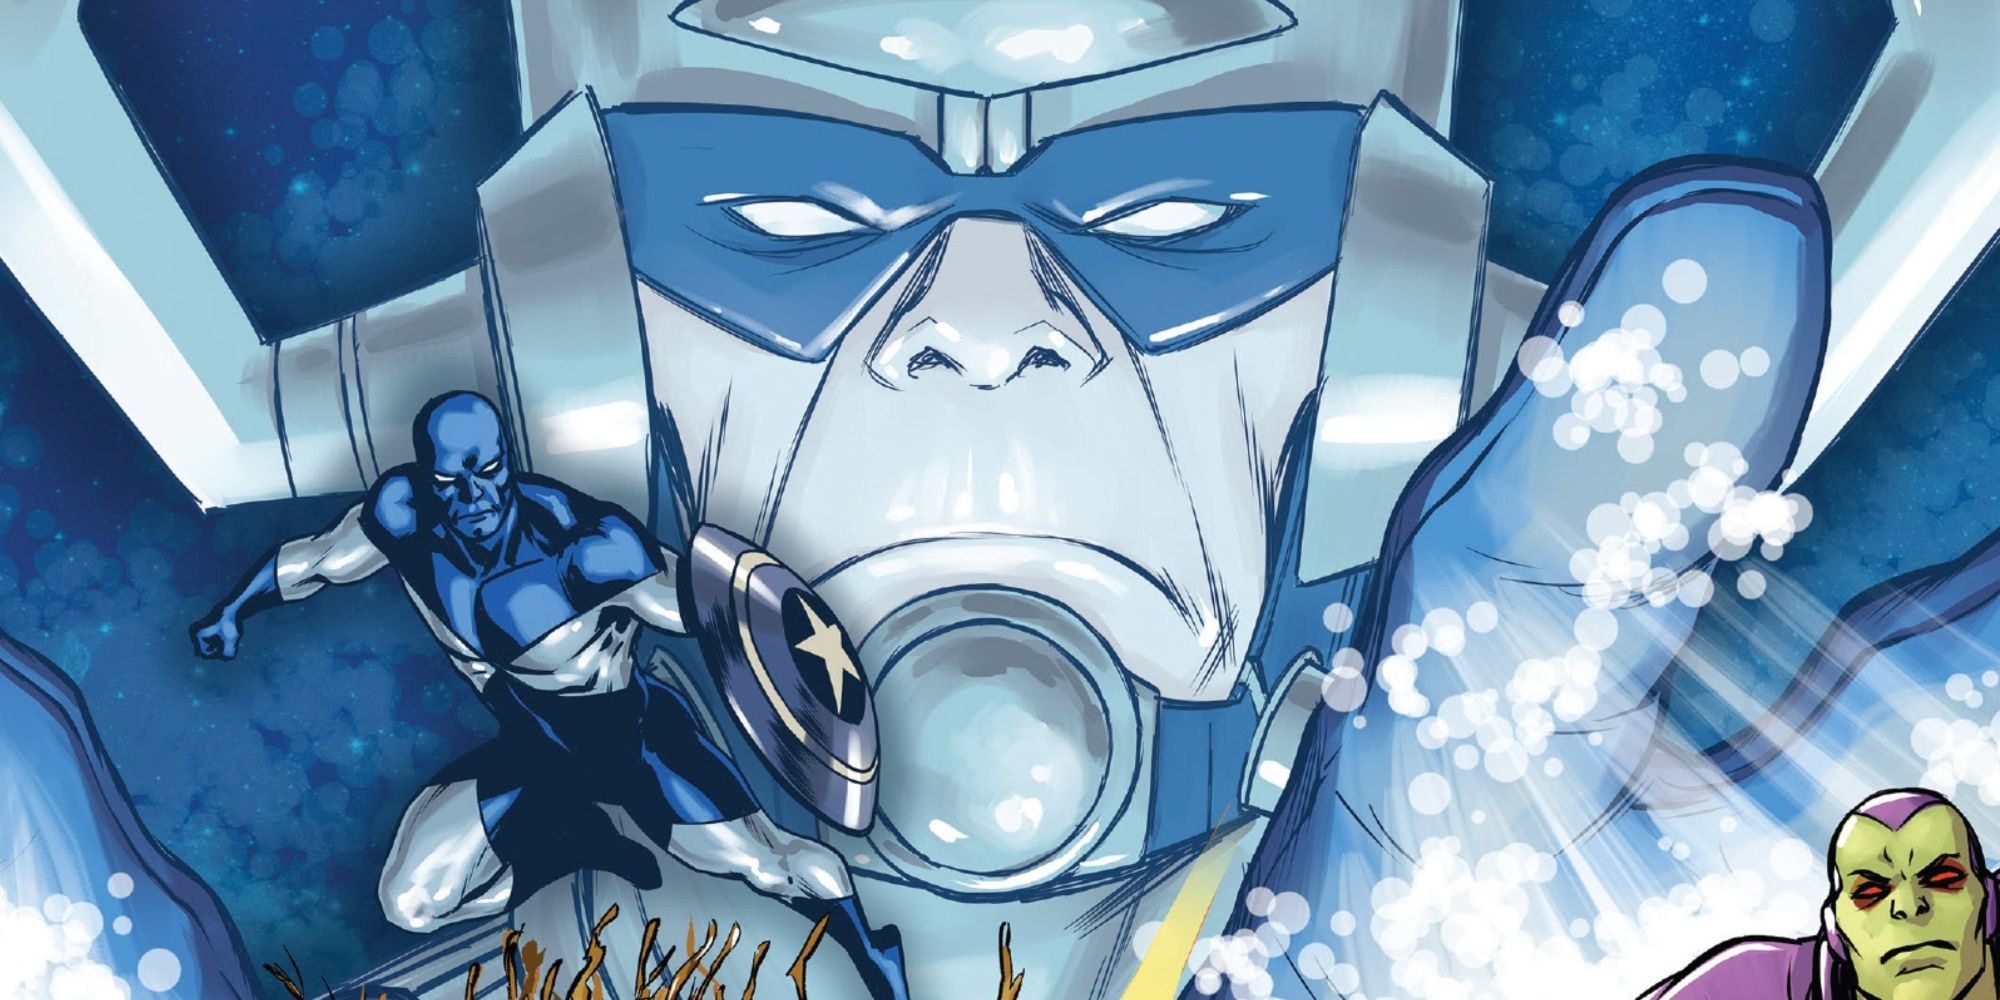 Major Victory flies in front of Galactus in Marvel Comics.